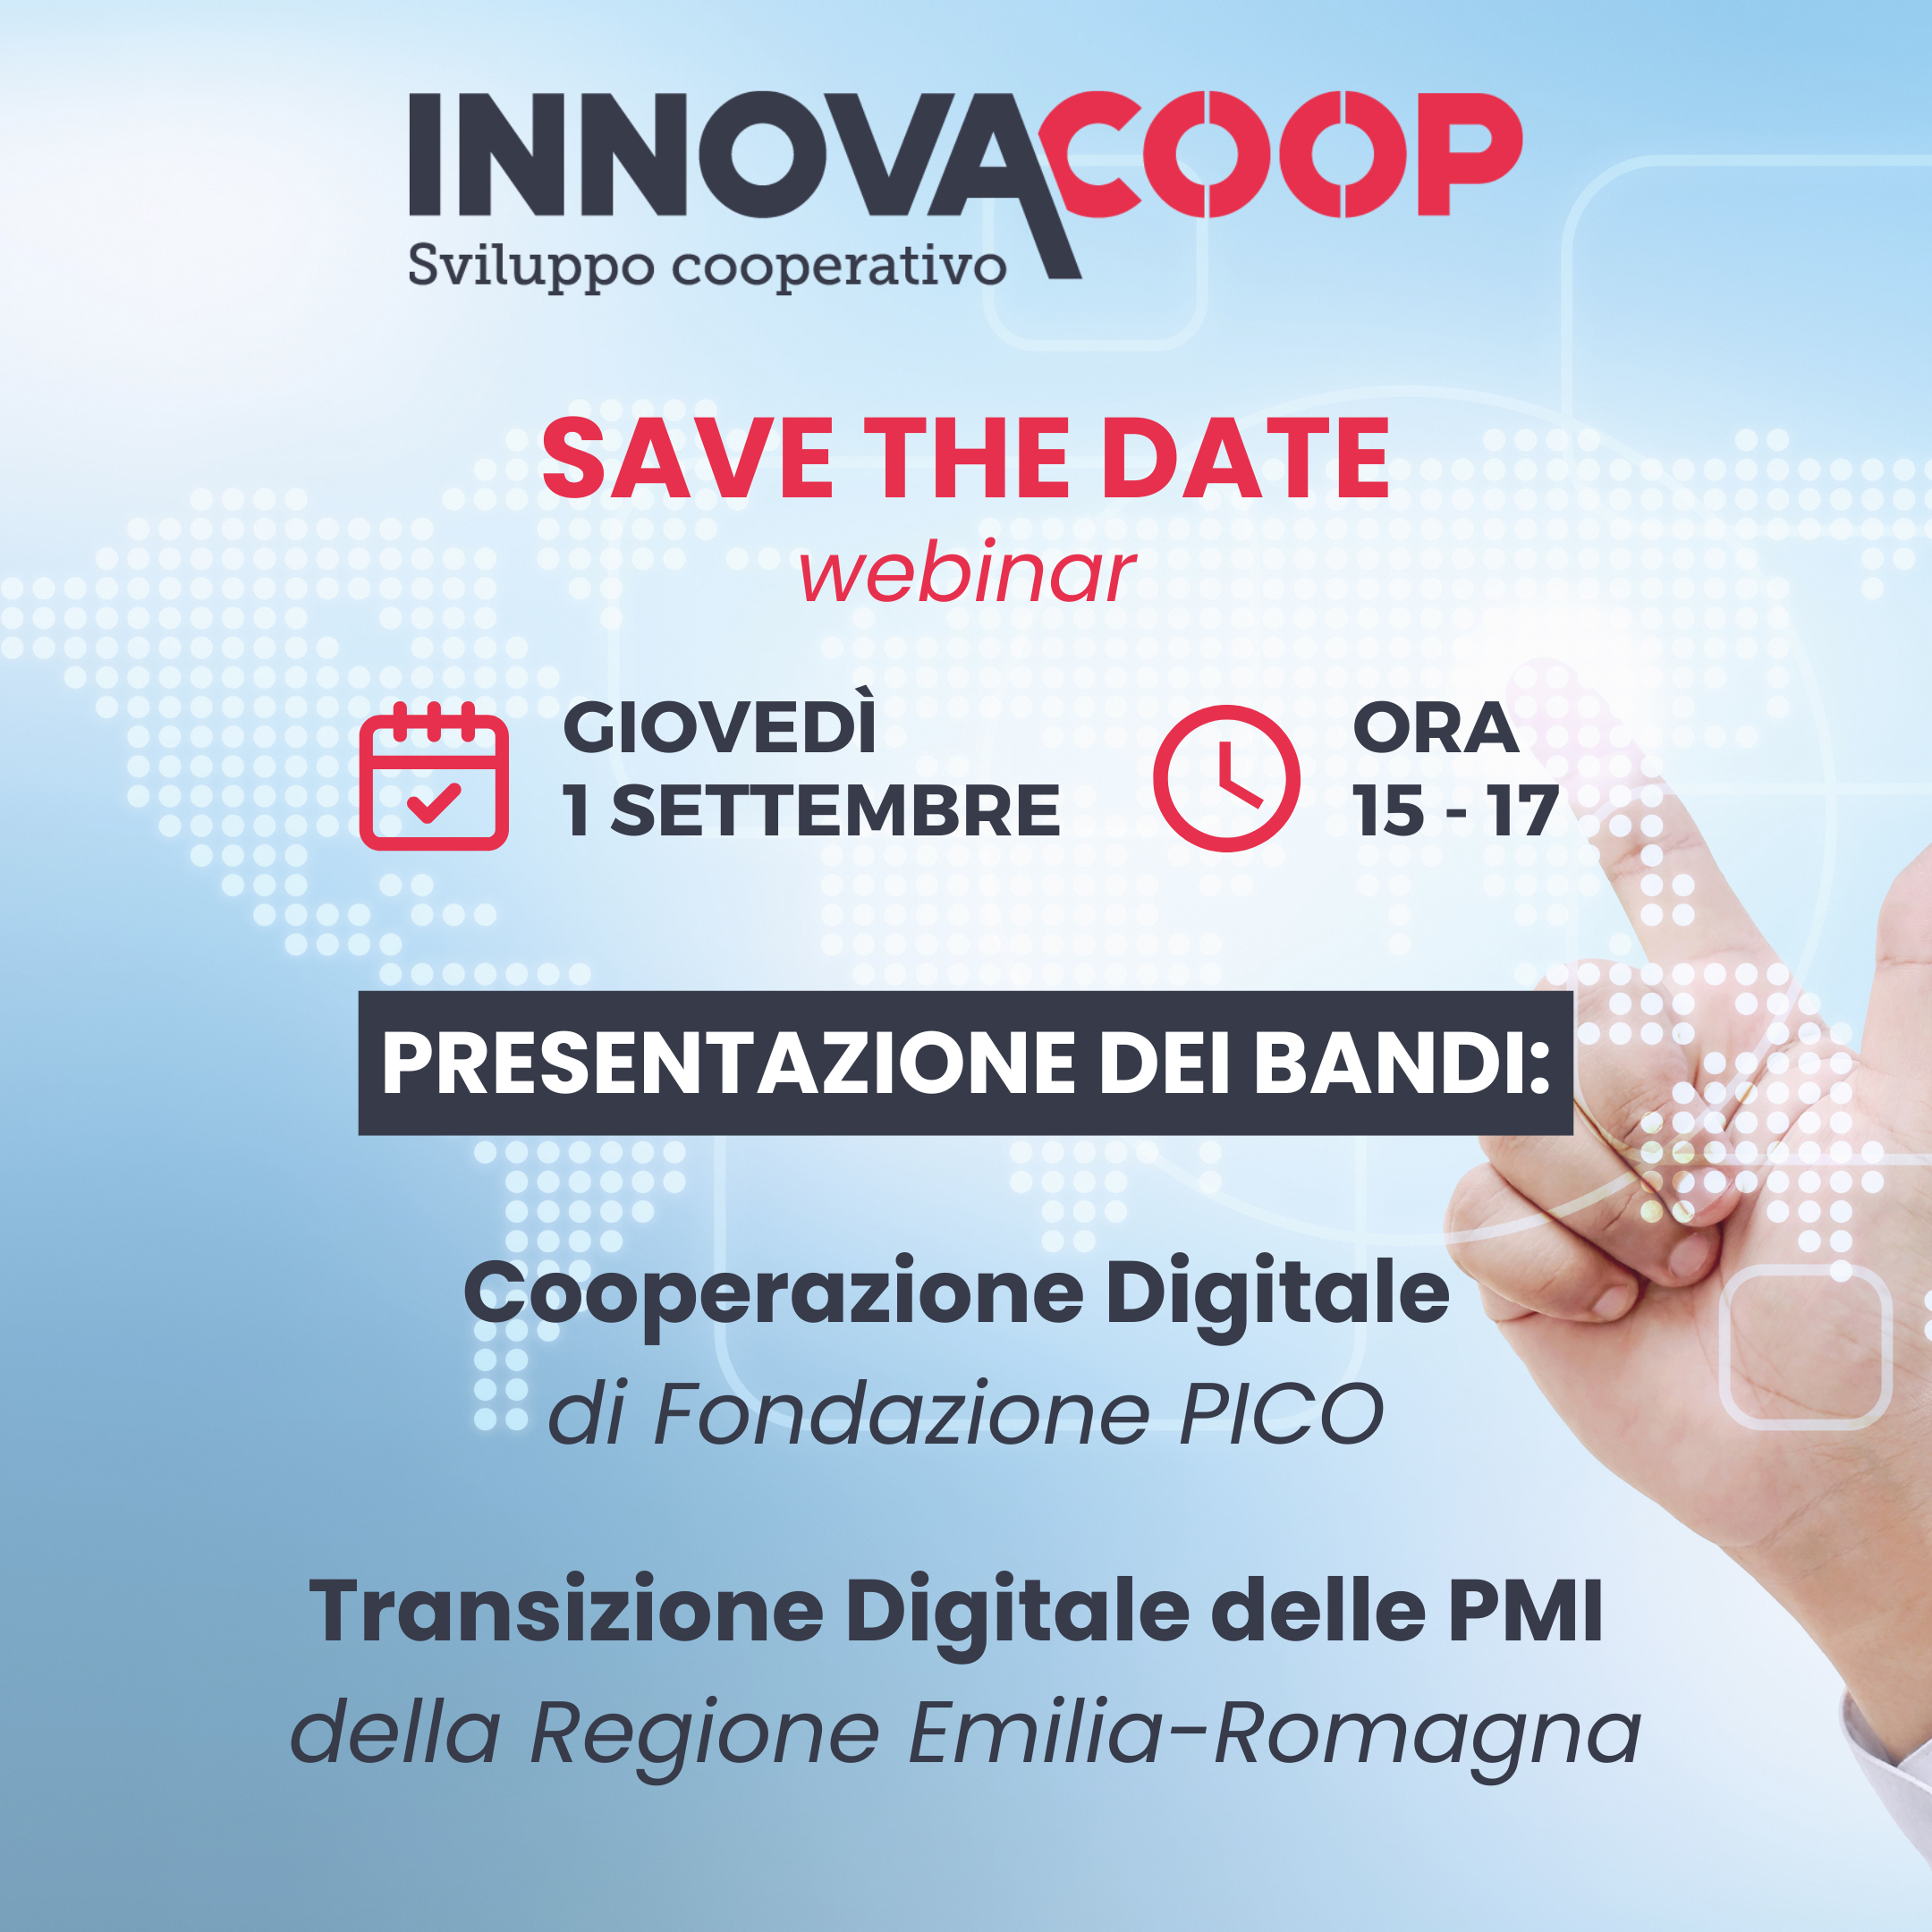 Webinar Innovacoop: l’1 settembre presentazione di bandi per digitalizzazione e trasformazione 4.0 delle imprese